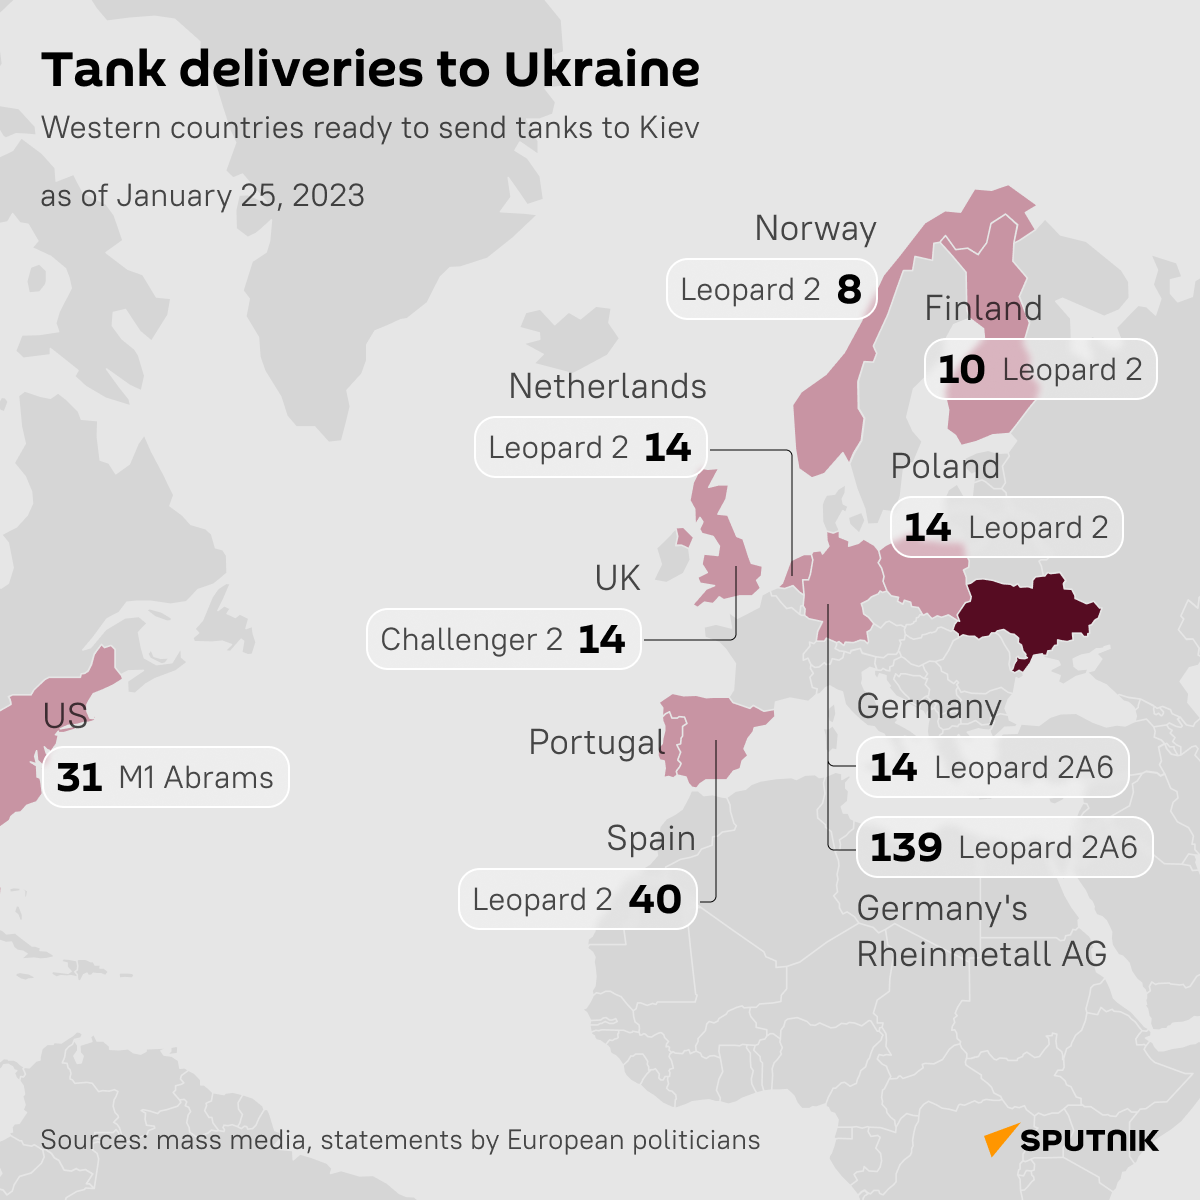 Tank deliveries to Ukraine desk - Sputnik International